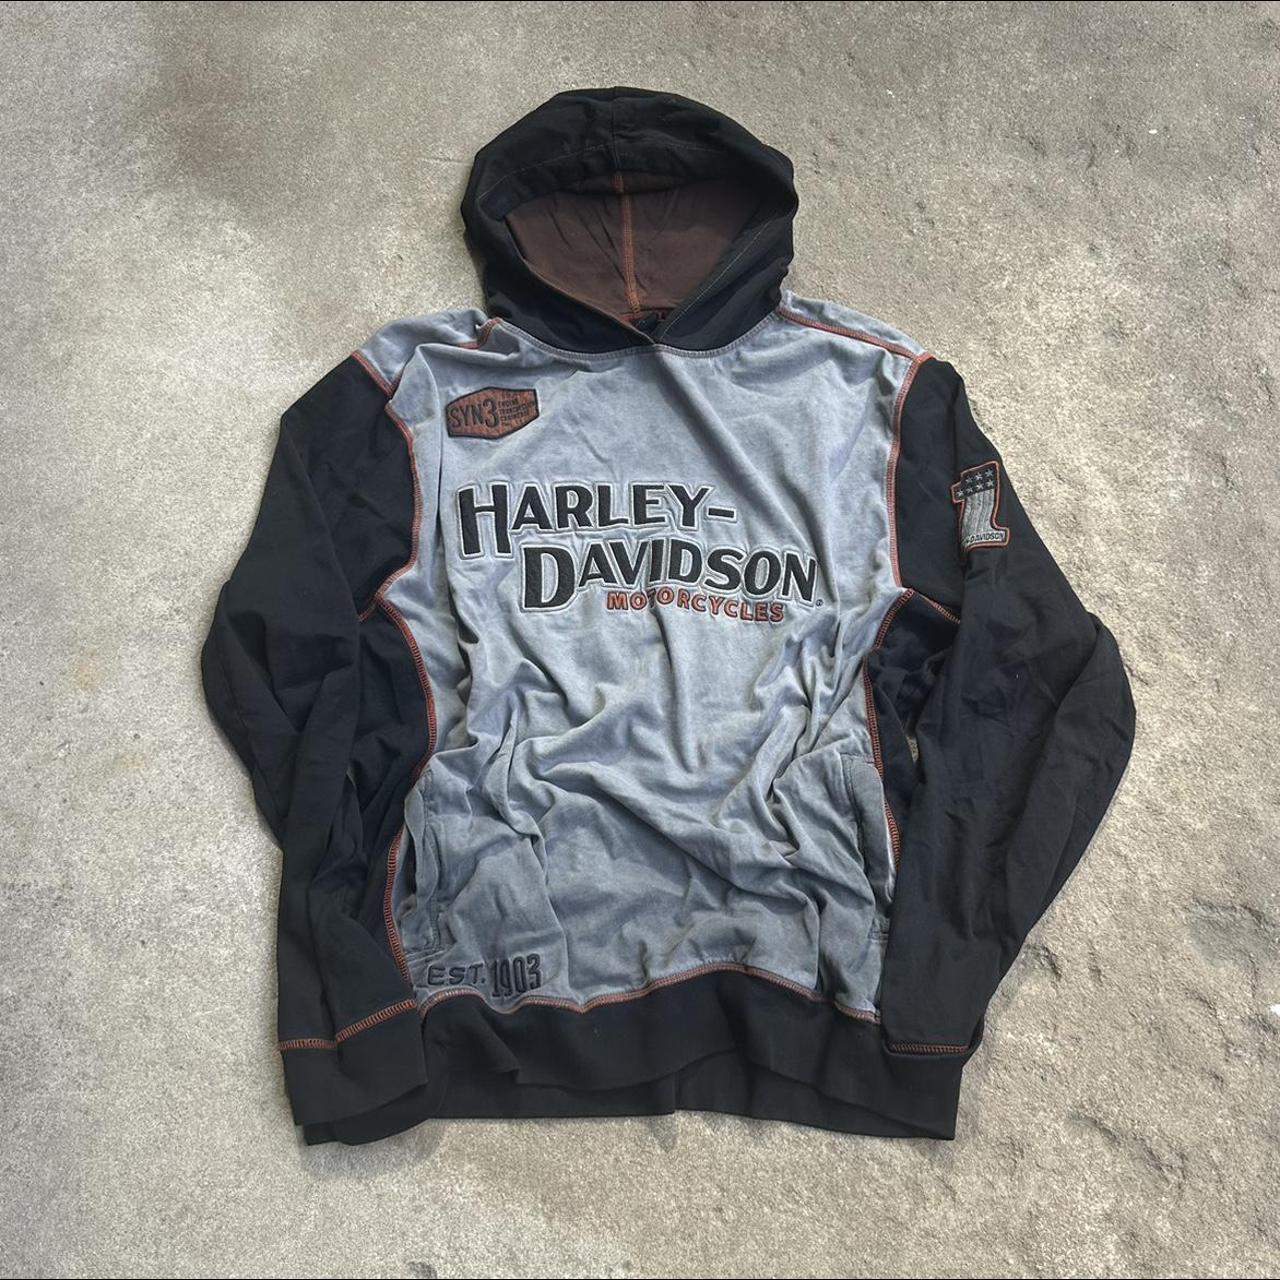 Vintage / Early 2000’s harley davidson sweatshirt... - Depop